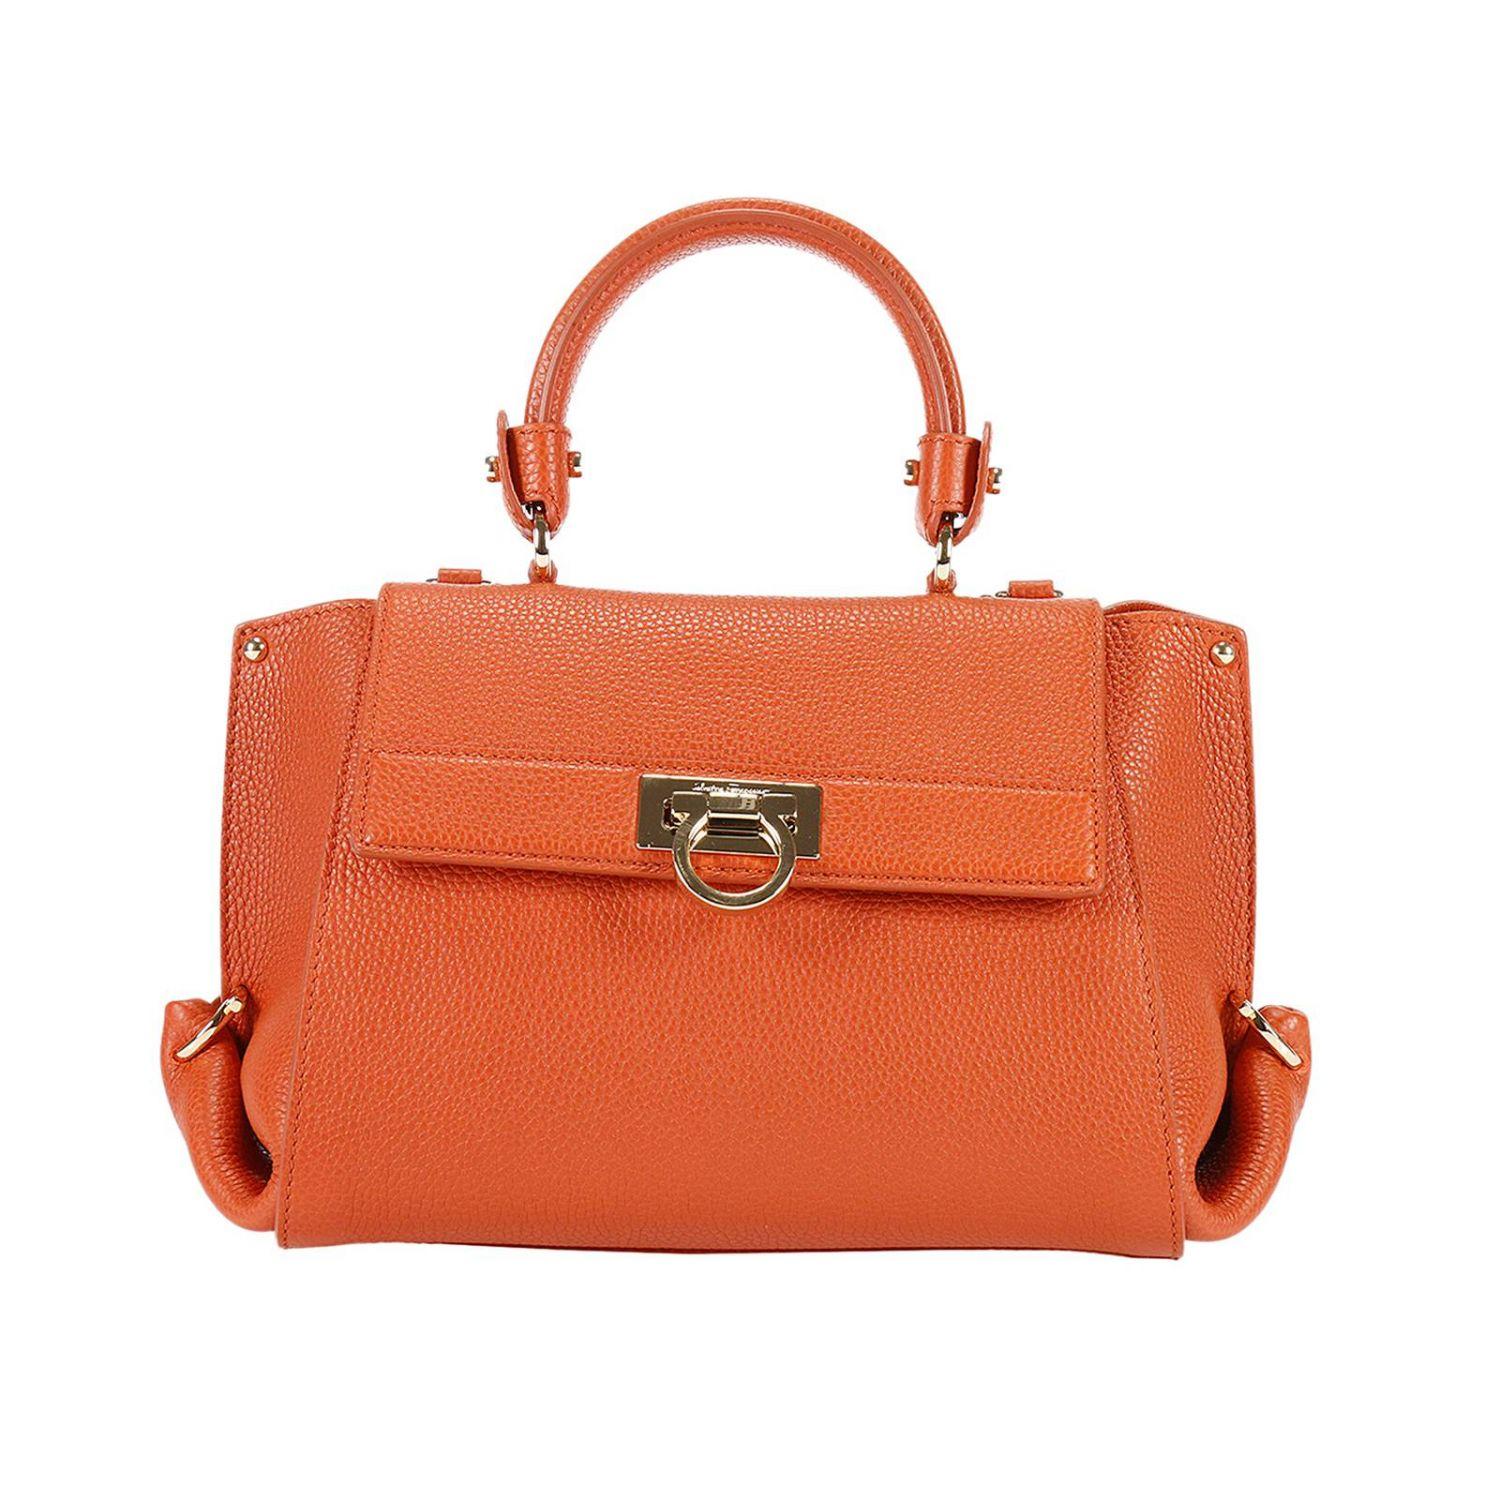 Lyst - Ferragamo Mini Bag Handbag Women in Orange